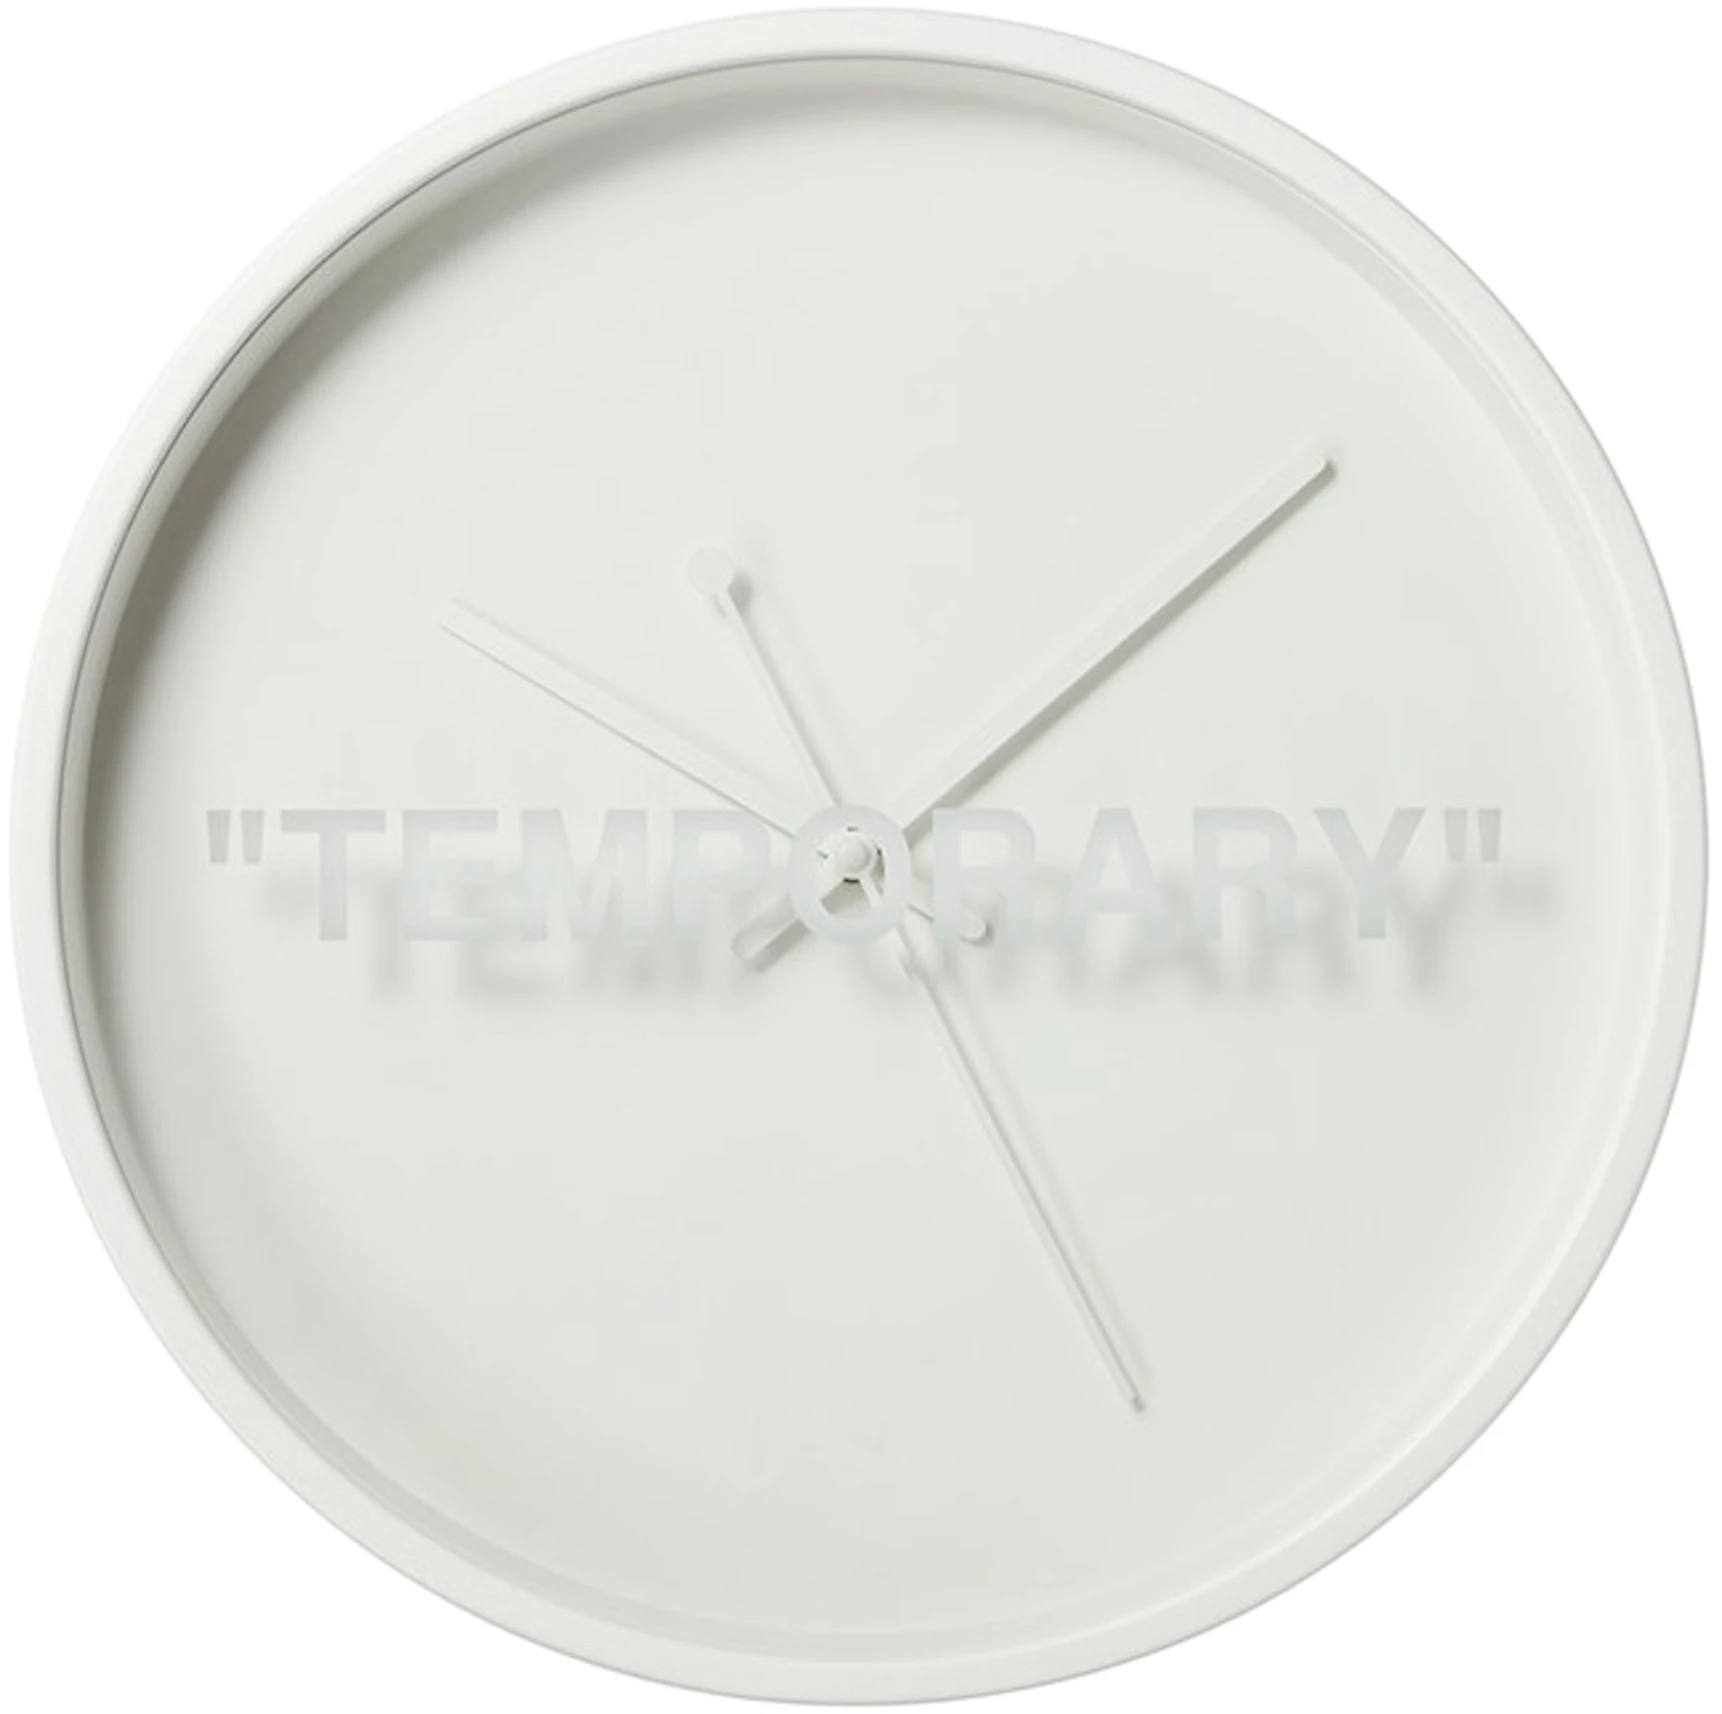 Abloh x IKEA MARKERAD "TEMPORARY" Clock US